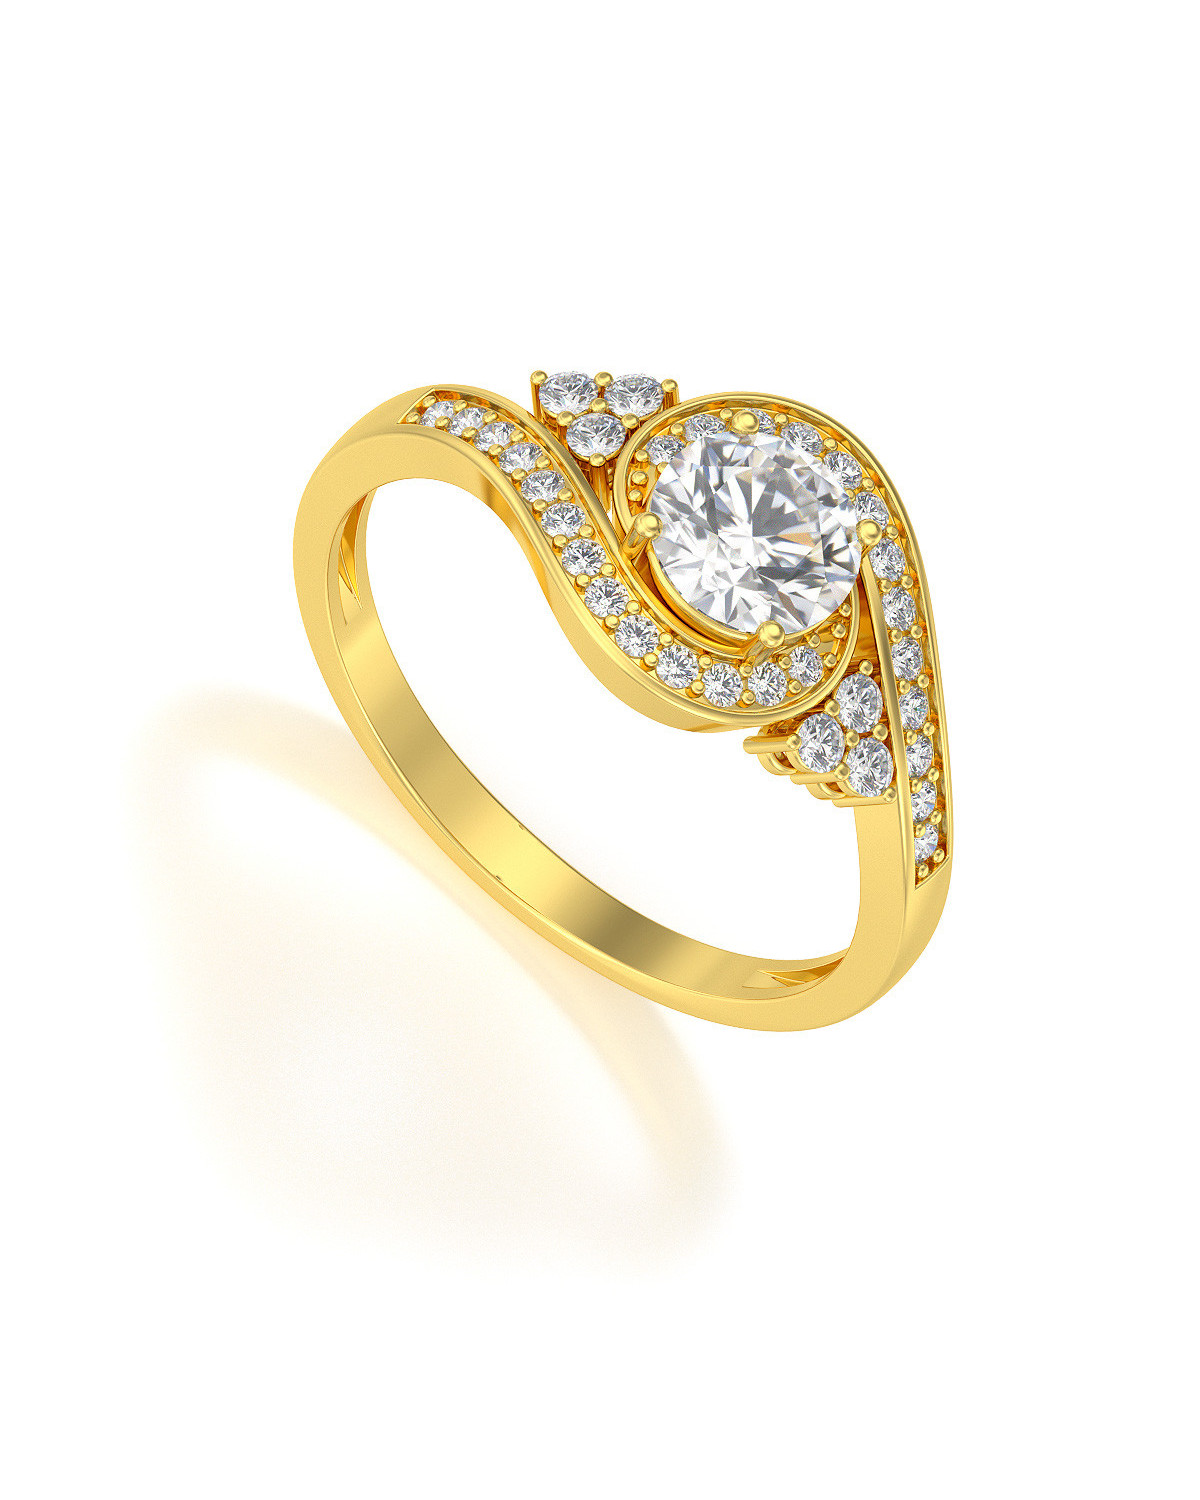 Gold Moissanite Diamonds Ring